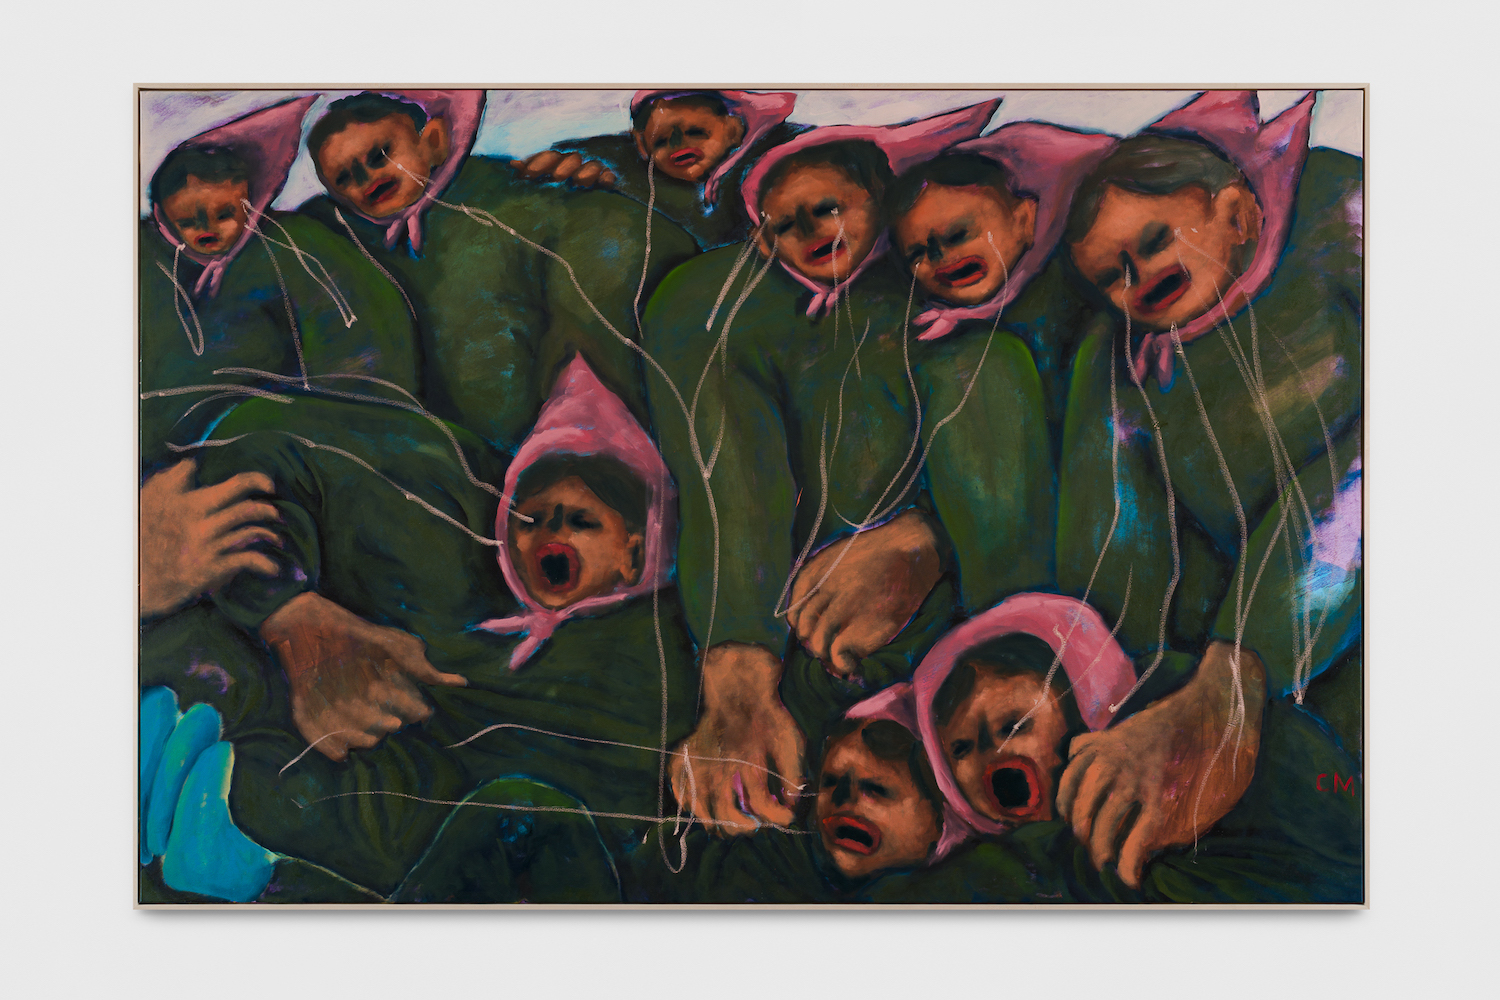 Querformatige Malerei zeigt neun Personen in zwei reihen. Alle tragen mosgrüne Oberbekleidung und ein rosafarbenes Kopftuch. Die Augenhöhlen wirken wie tot, die roten Münder sind weit aufgerissen.